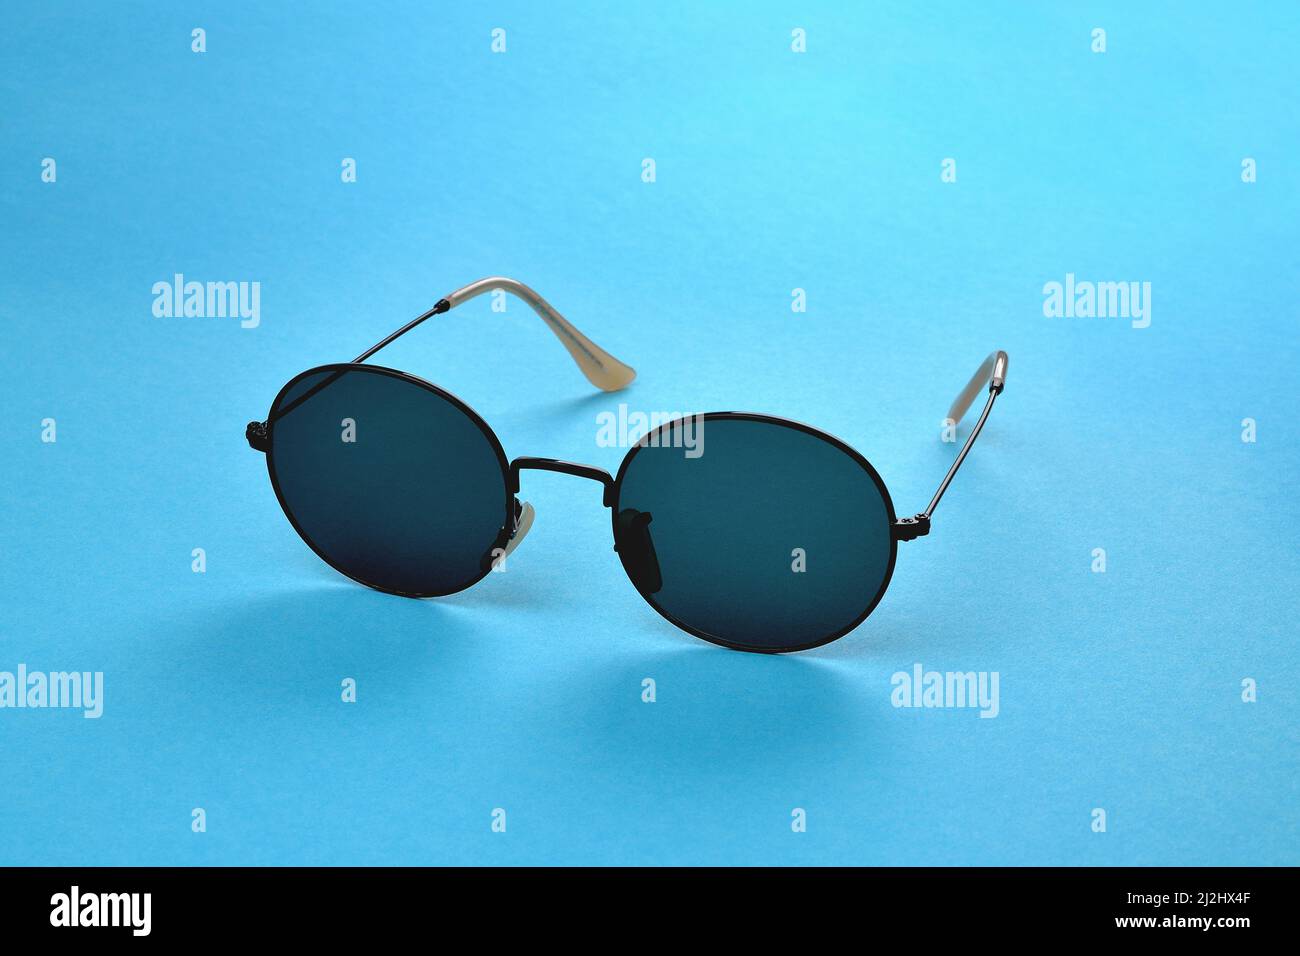 Occhiali da sole, eleganti occhiali da sole su sfondo blu, messa a fuoco selettiva ravvicinata Foto Stock